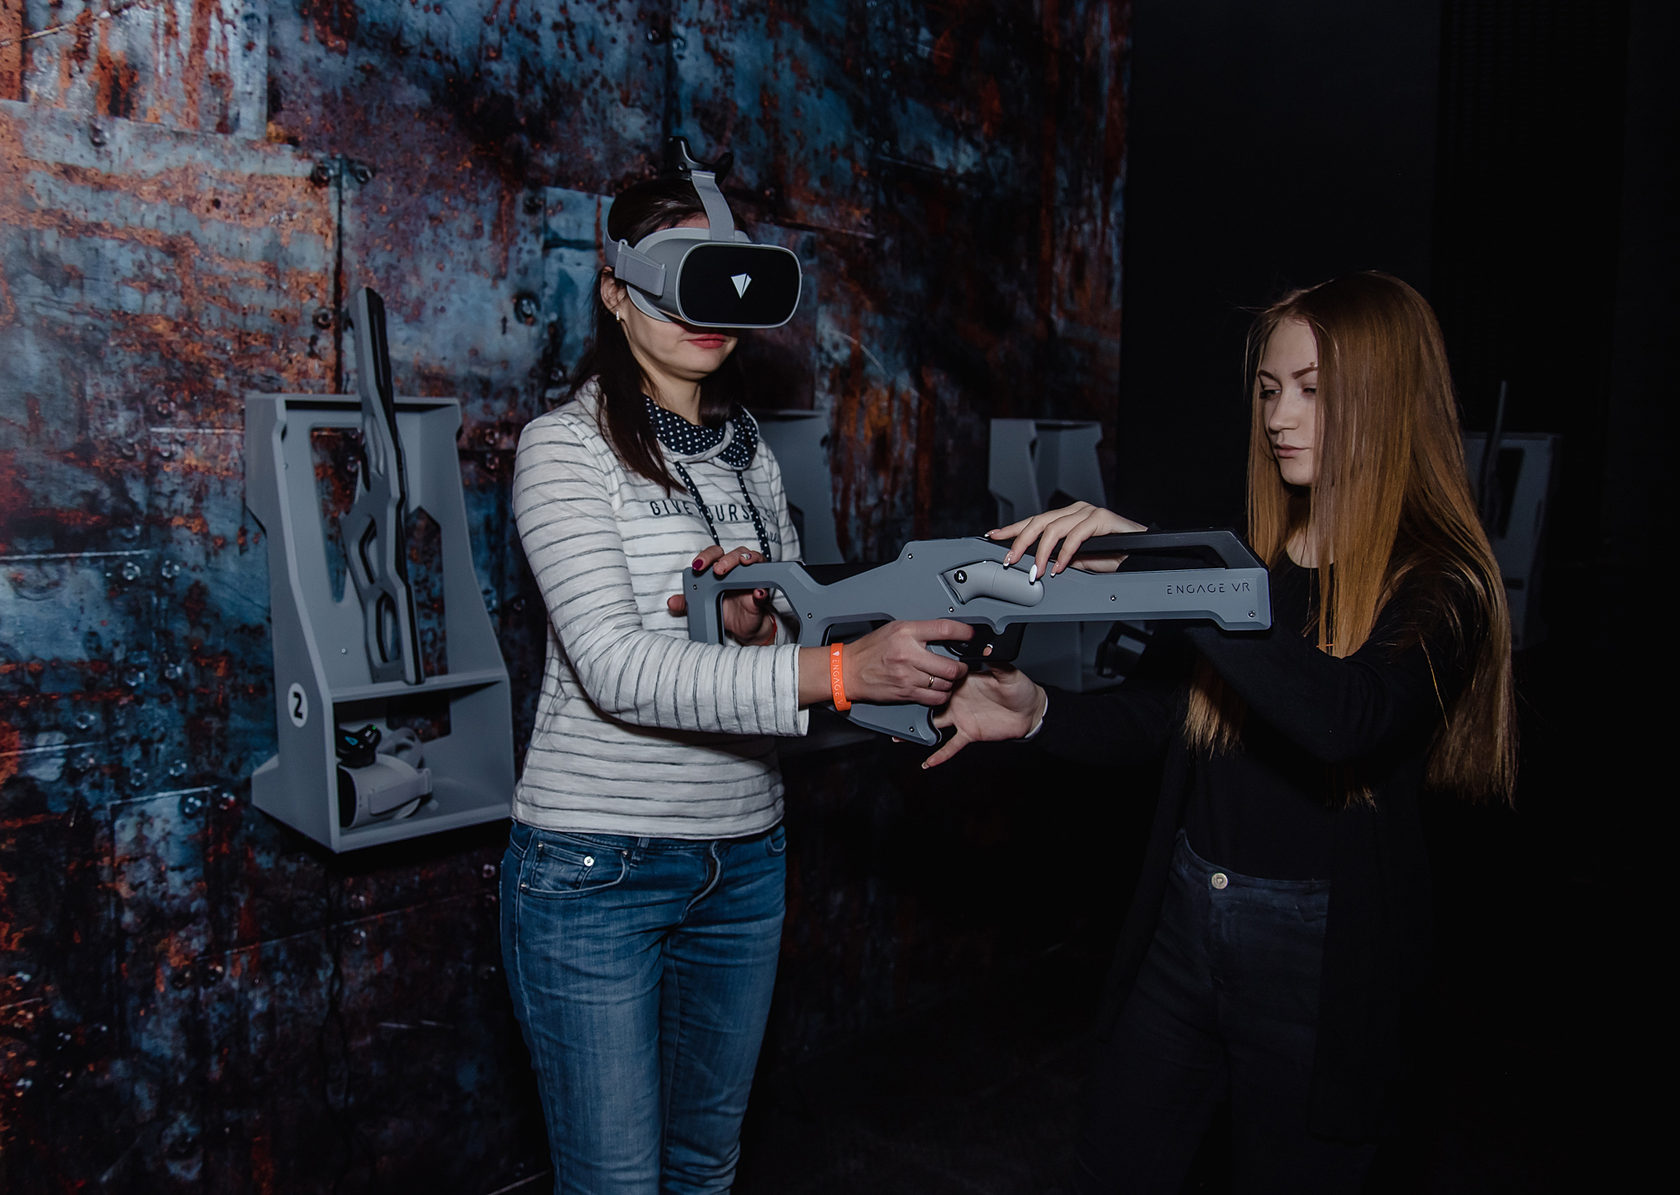 Vr москва играть. Парк развлечений engage VR. Engage VR Москва. Парк виртуальной реальности Пенза. Виртуальная реальность игры в парке.